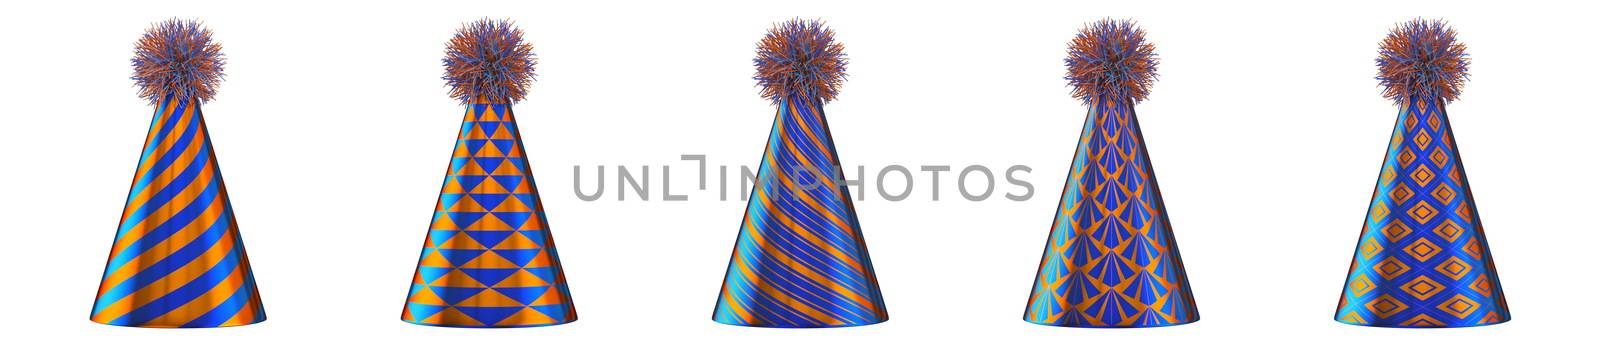 Five blue orange party hats 3D by djmilic